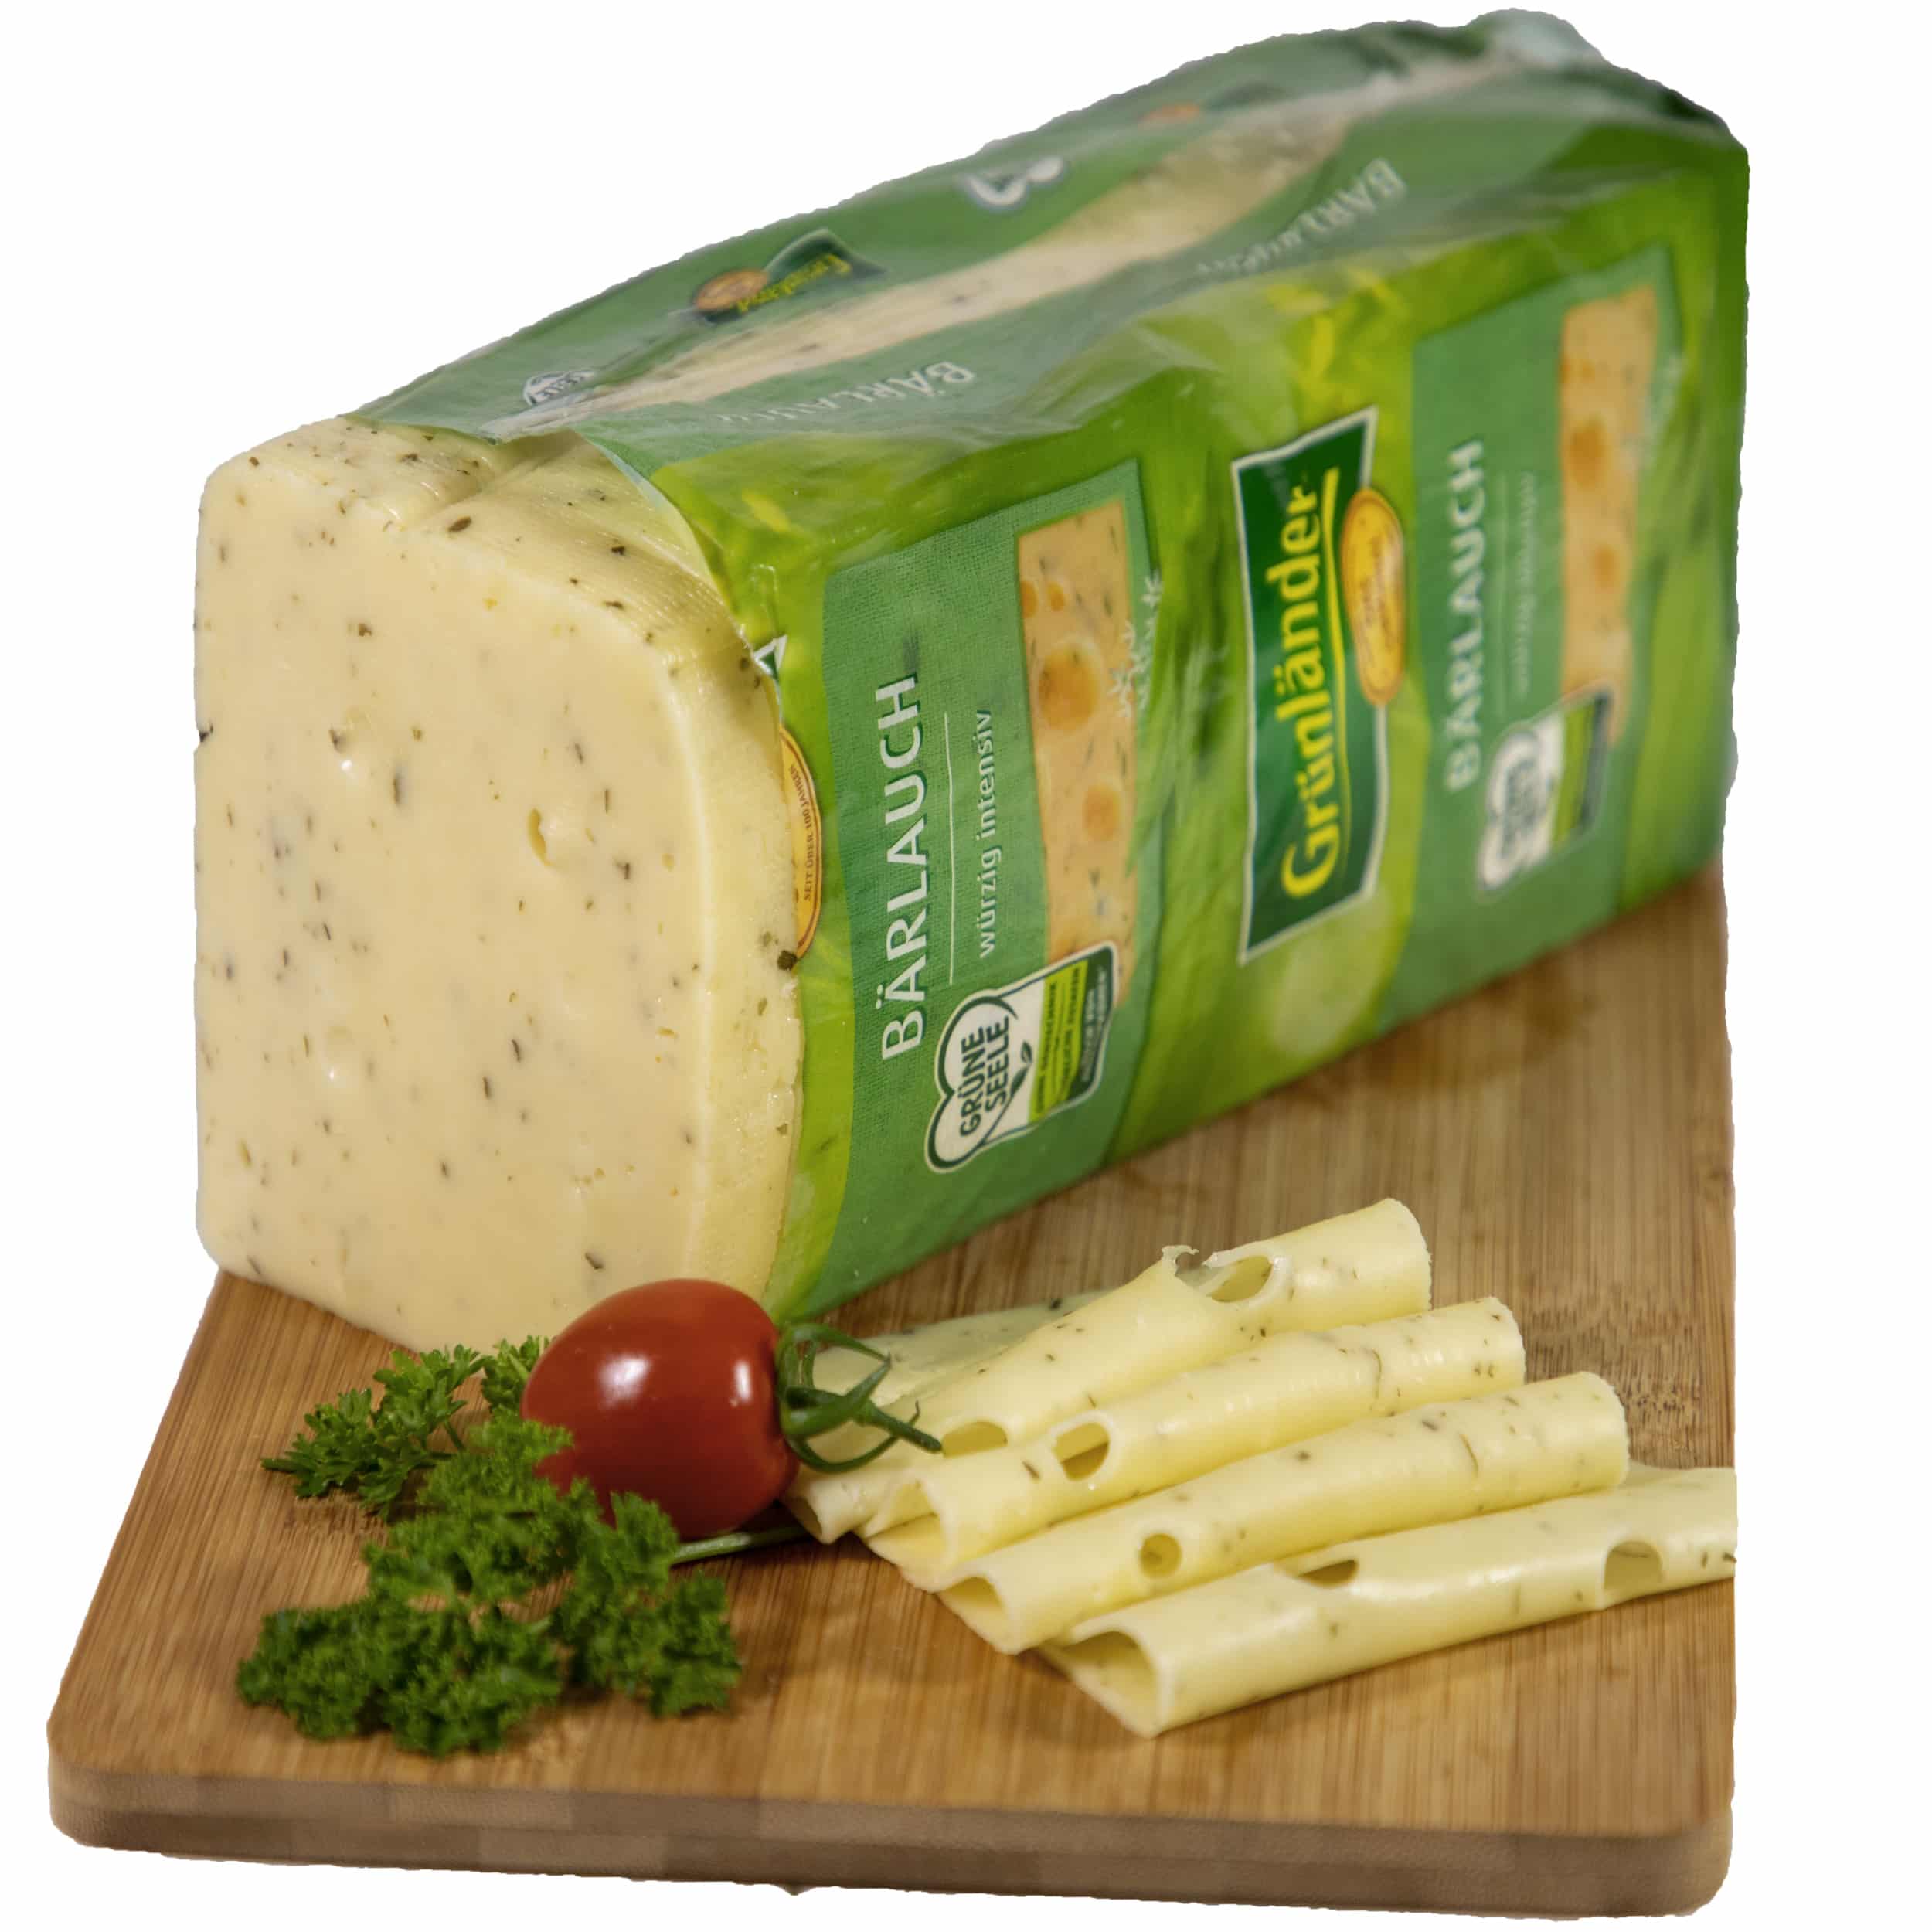 Grünländer Käse Bärlauch 48% Fett i. Tr. jetzt bestellen!